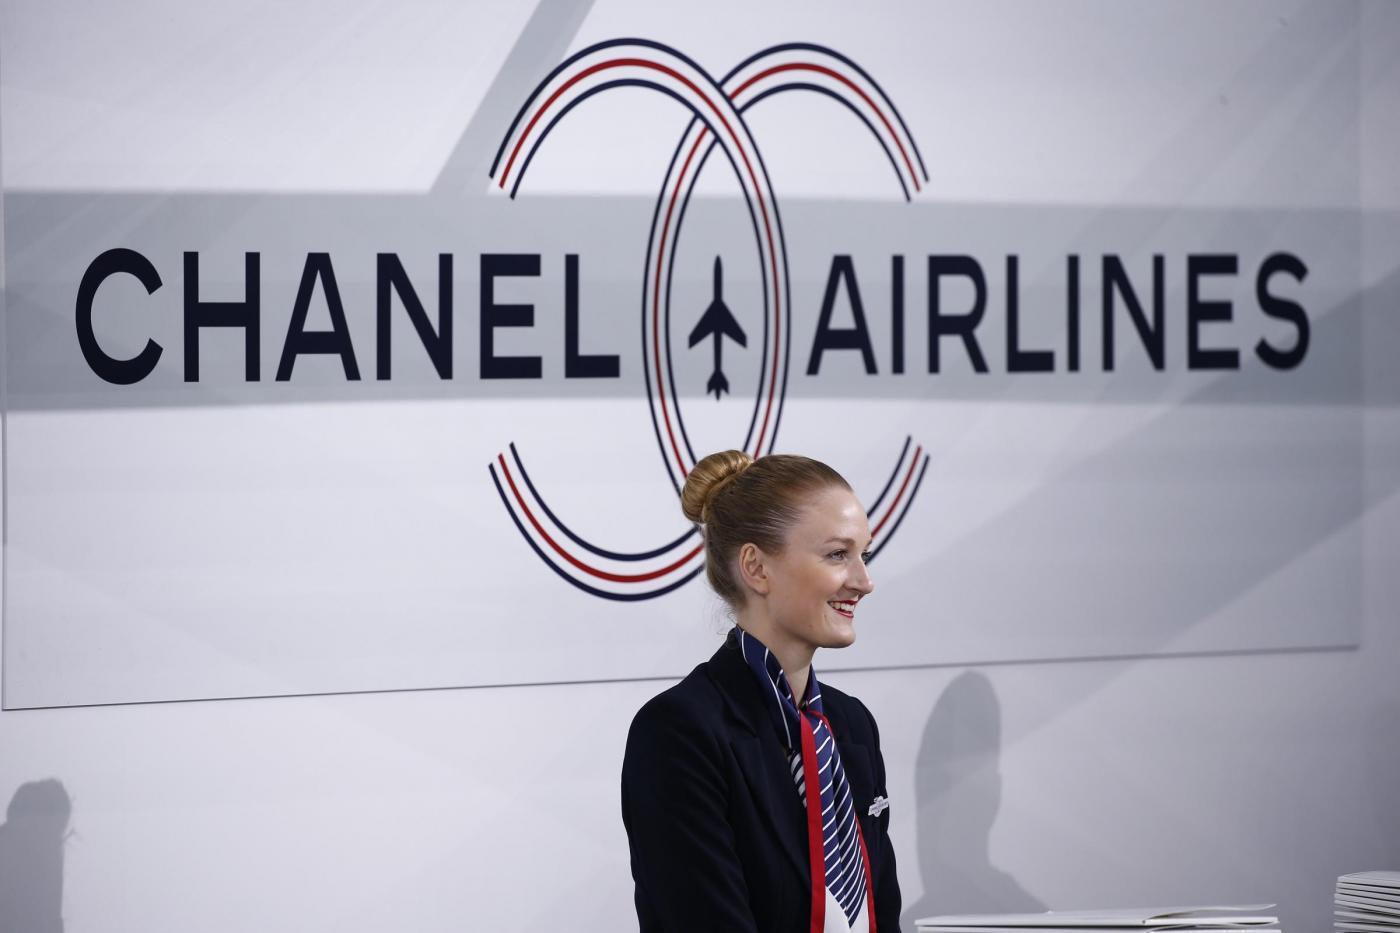 Chanel prende il "volo": sfilata si trasforma in aeroporto FOTO8